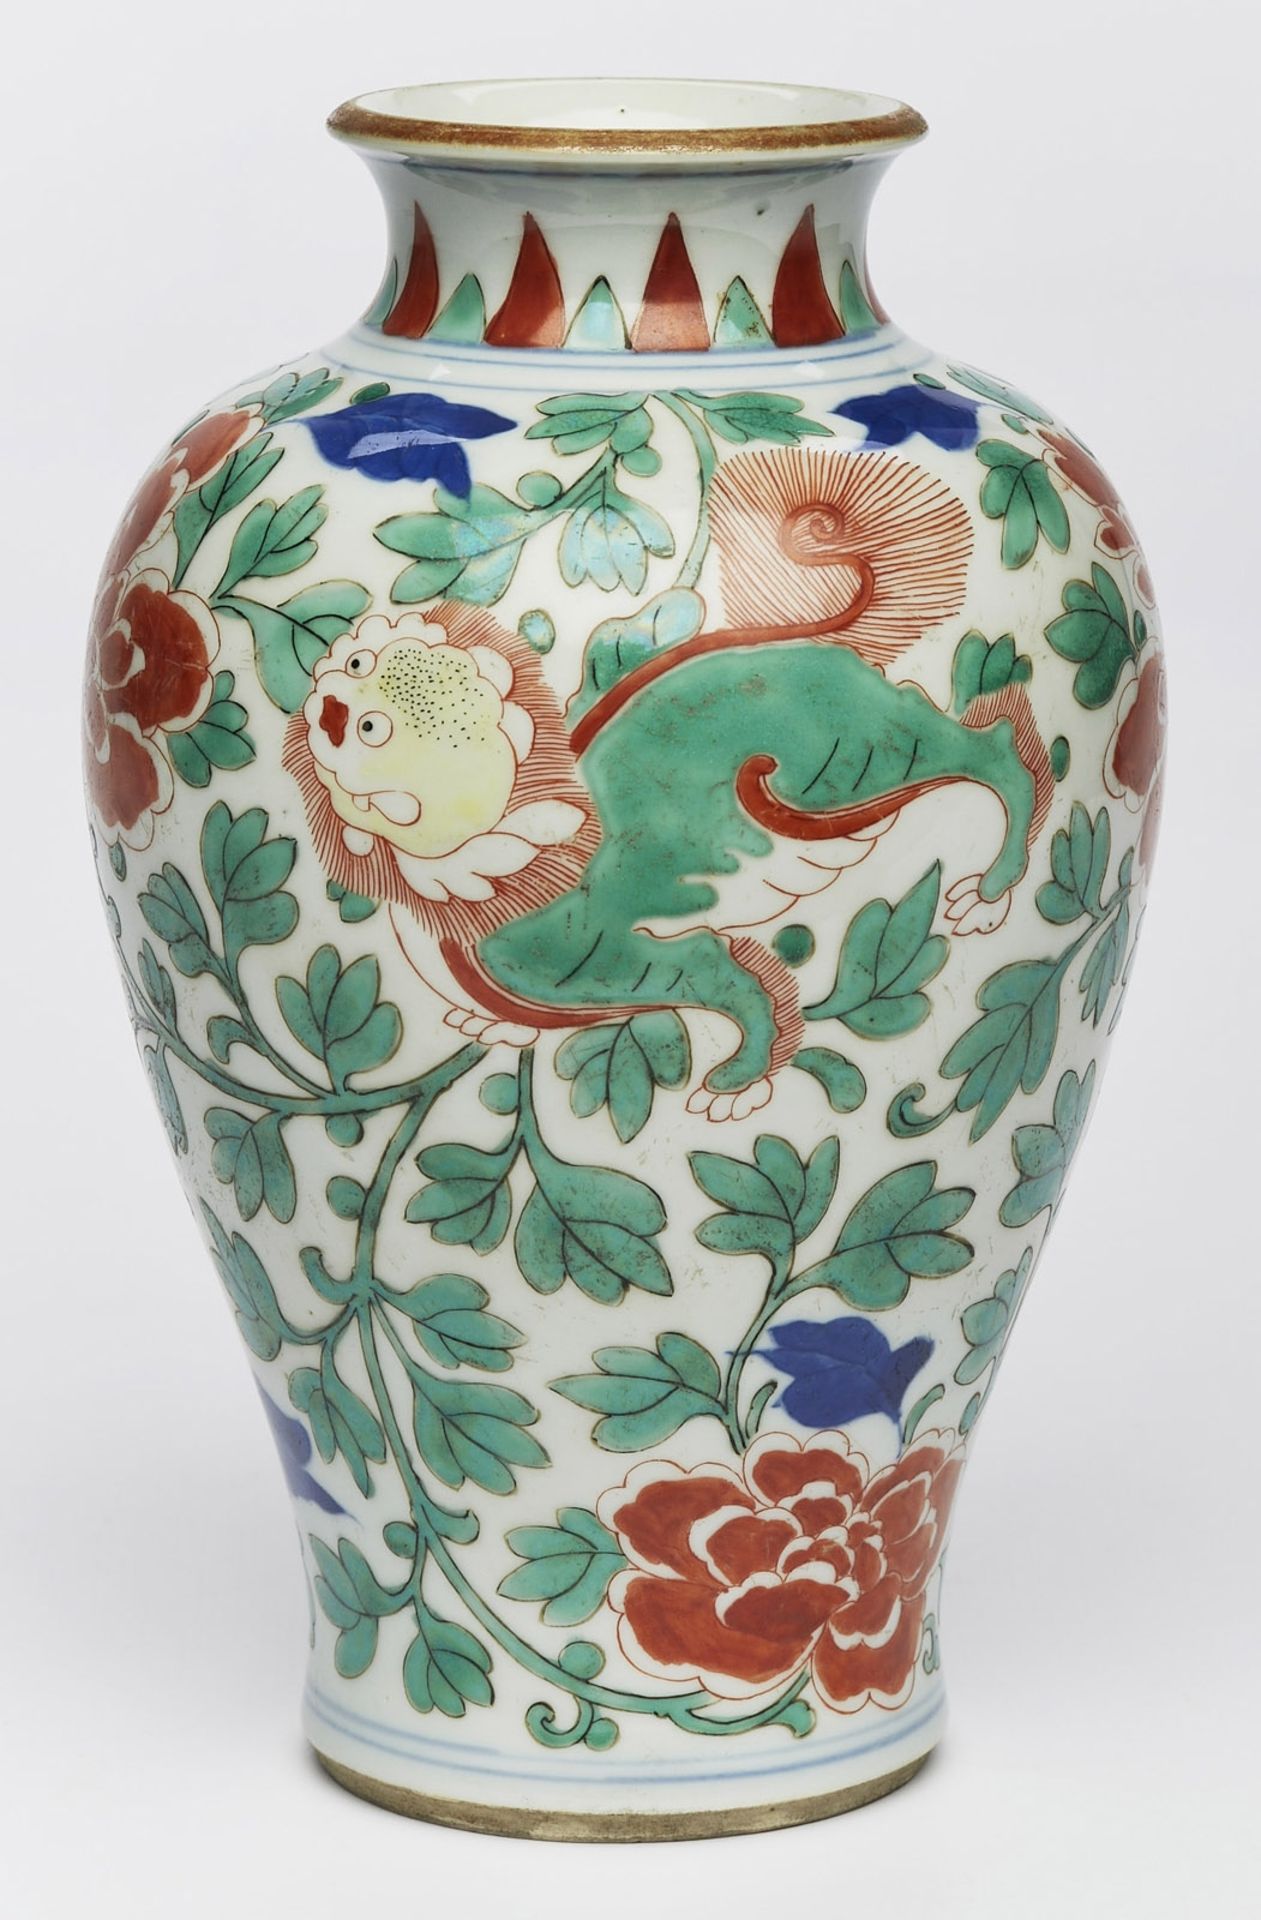 Kl. Vase "Blüten und Phohunde", China wohl 18 Jh. - Image 2 of 2